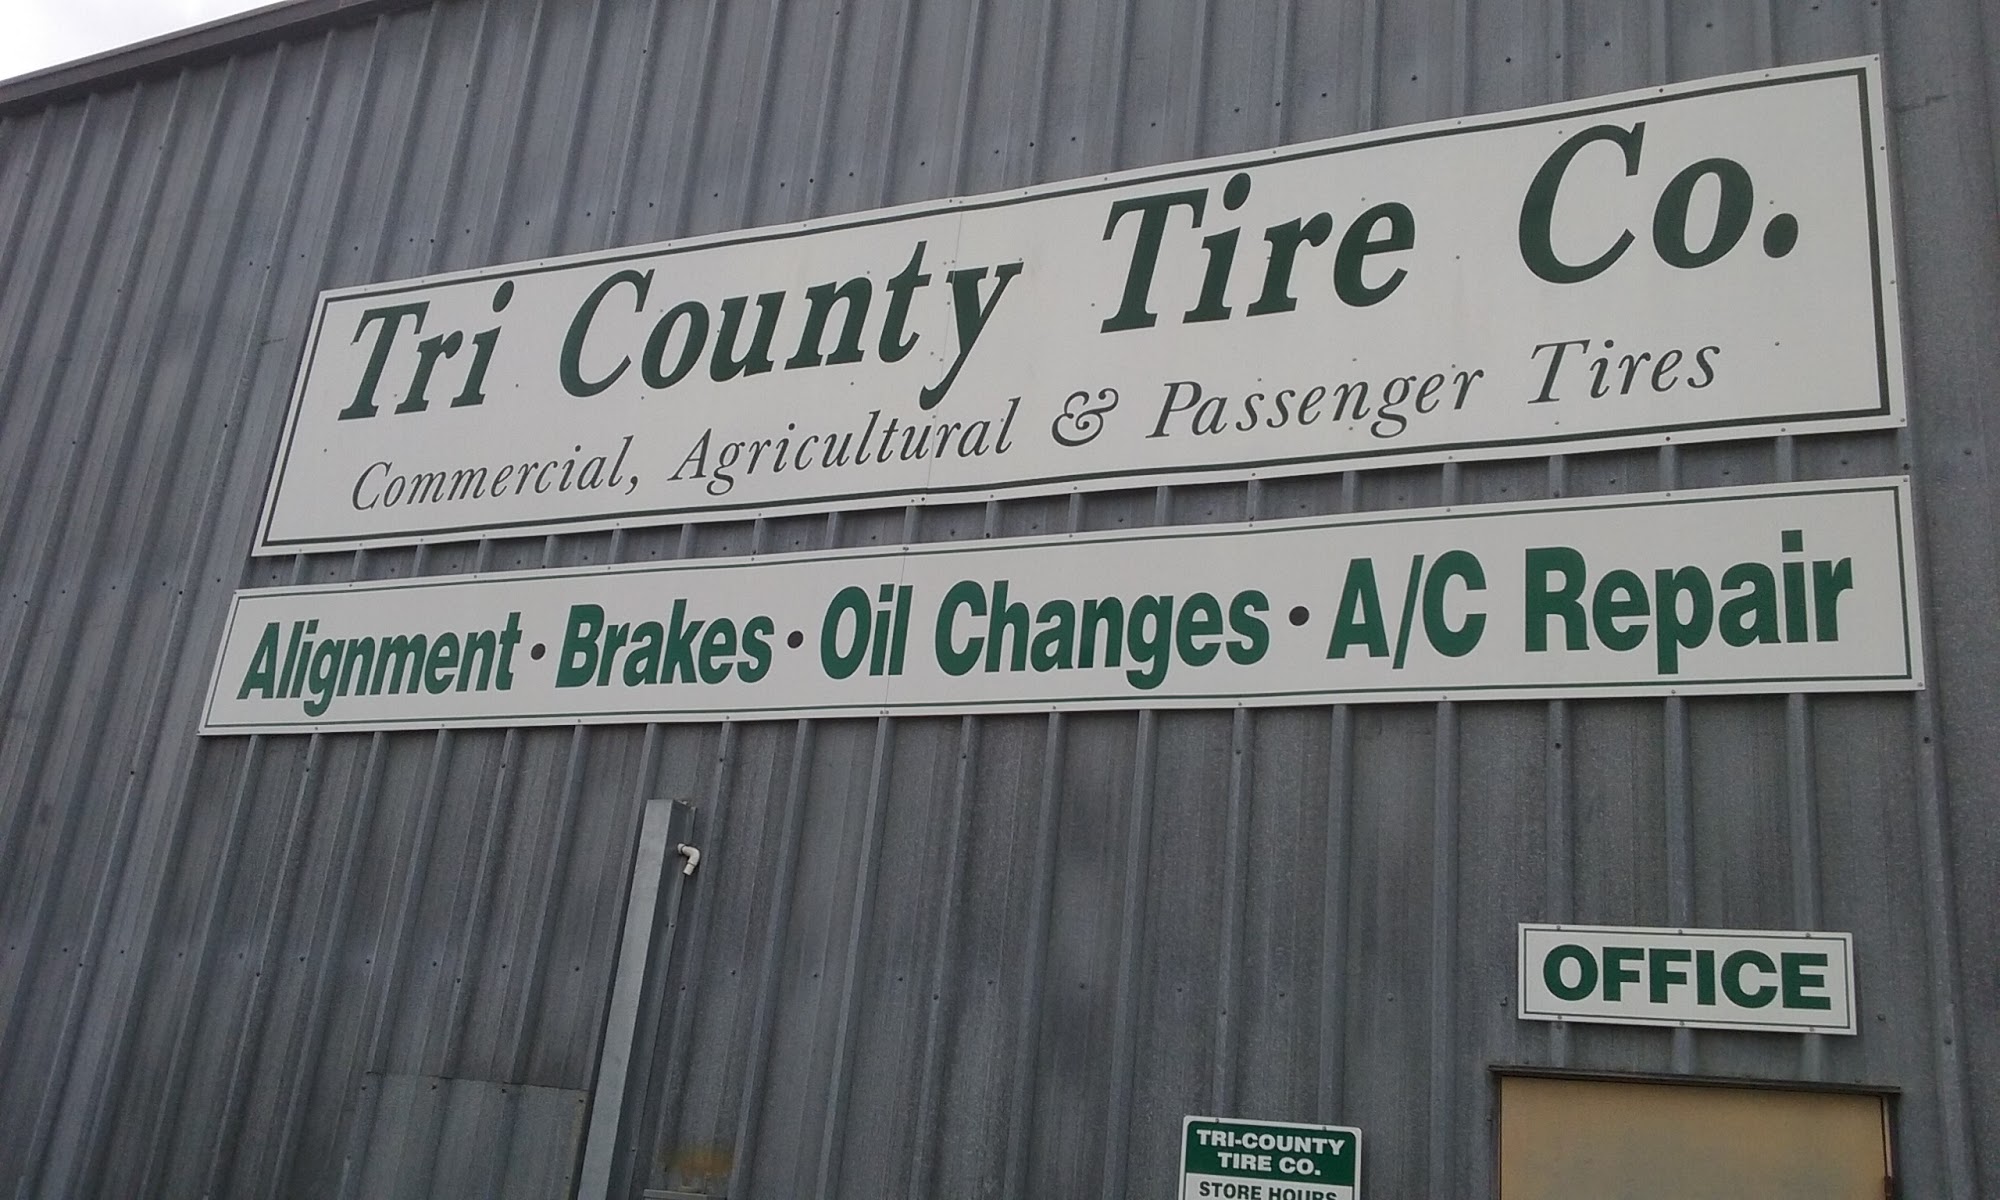 Tri County Tire Co